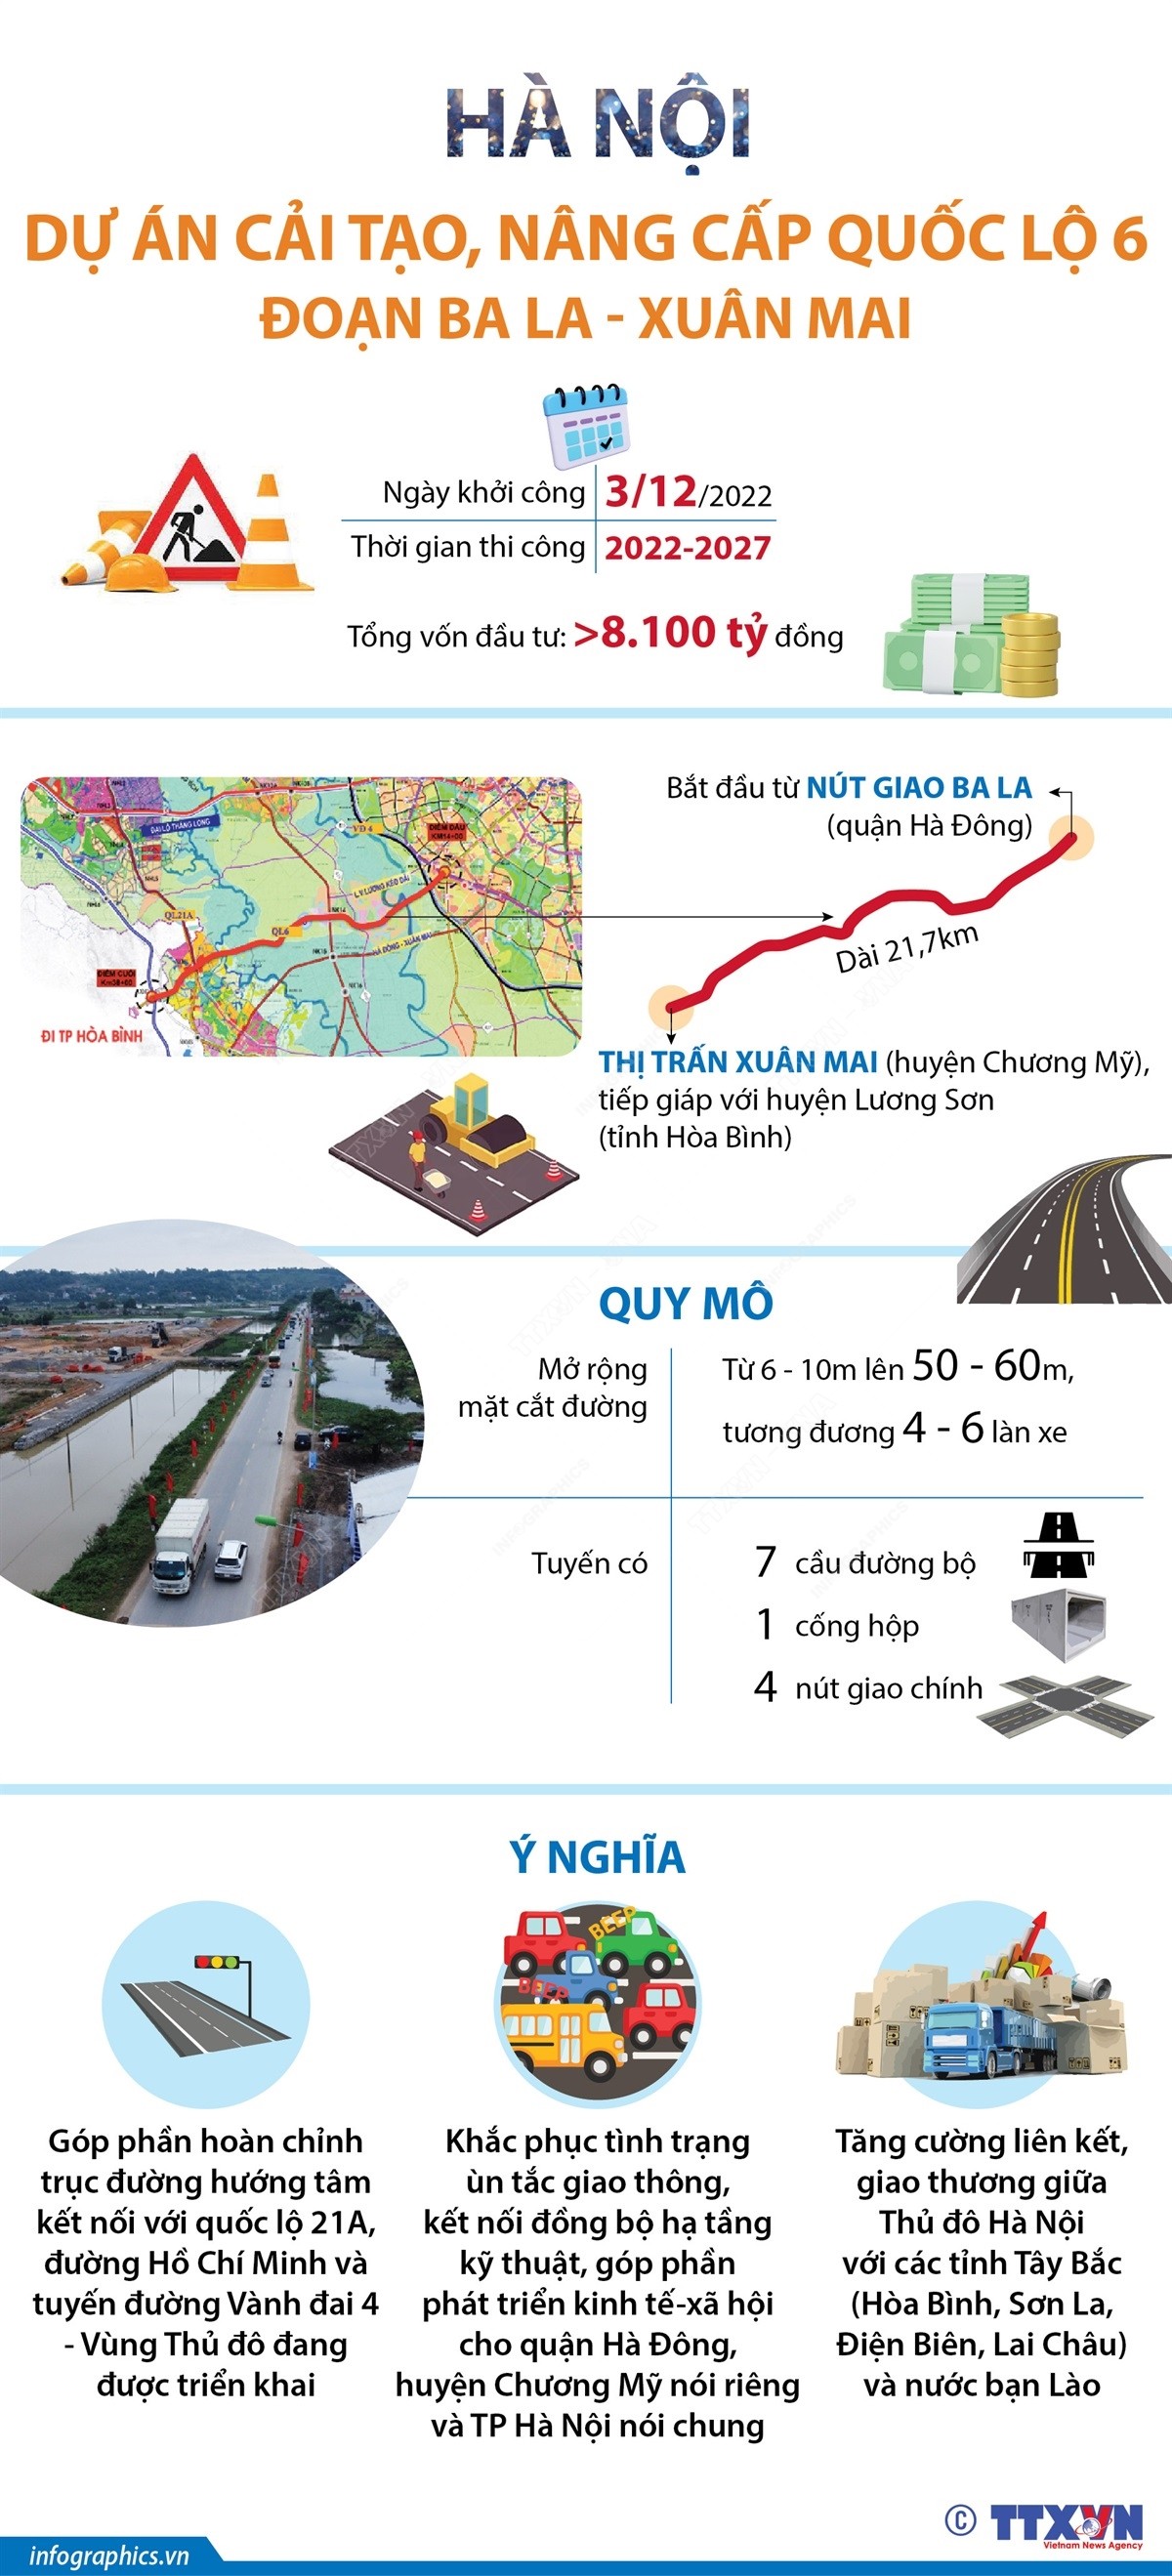 Hà Nội: Dự án cải tạo, nâng cấp quốc lộ 6 đoạn Ba La - Xuân Mai